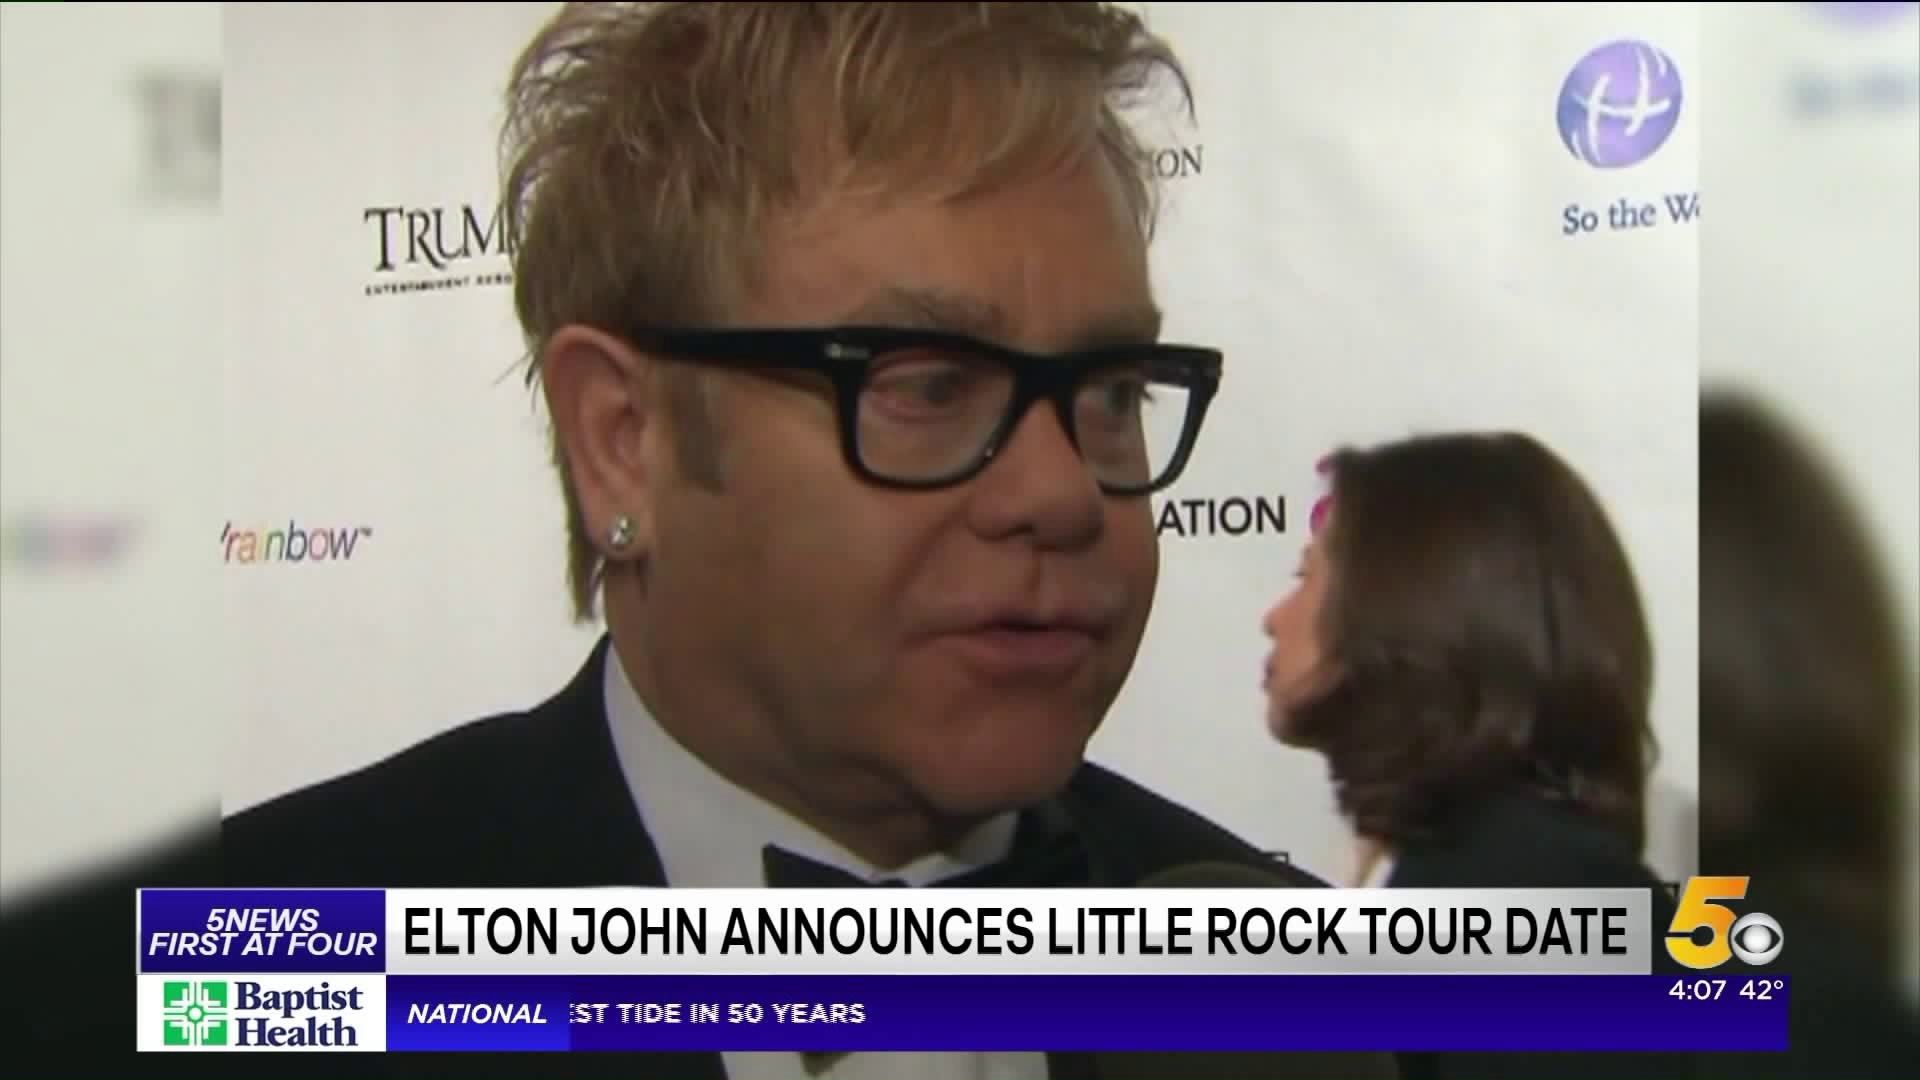 Elton John Announces Little Rock Tour Date